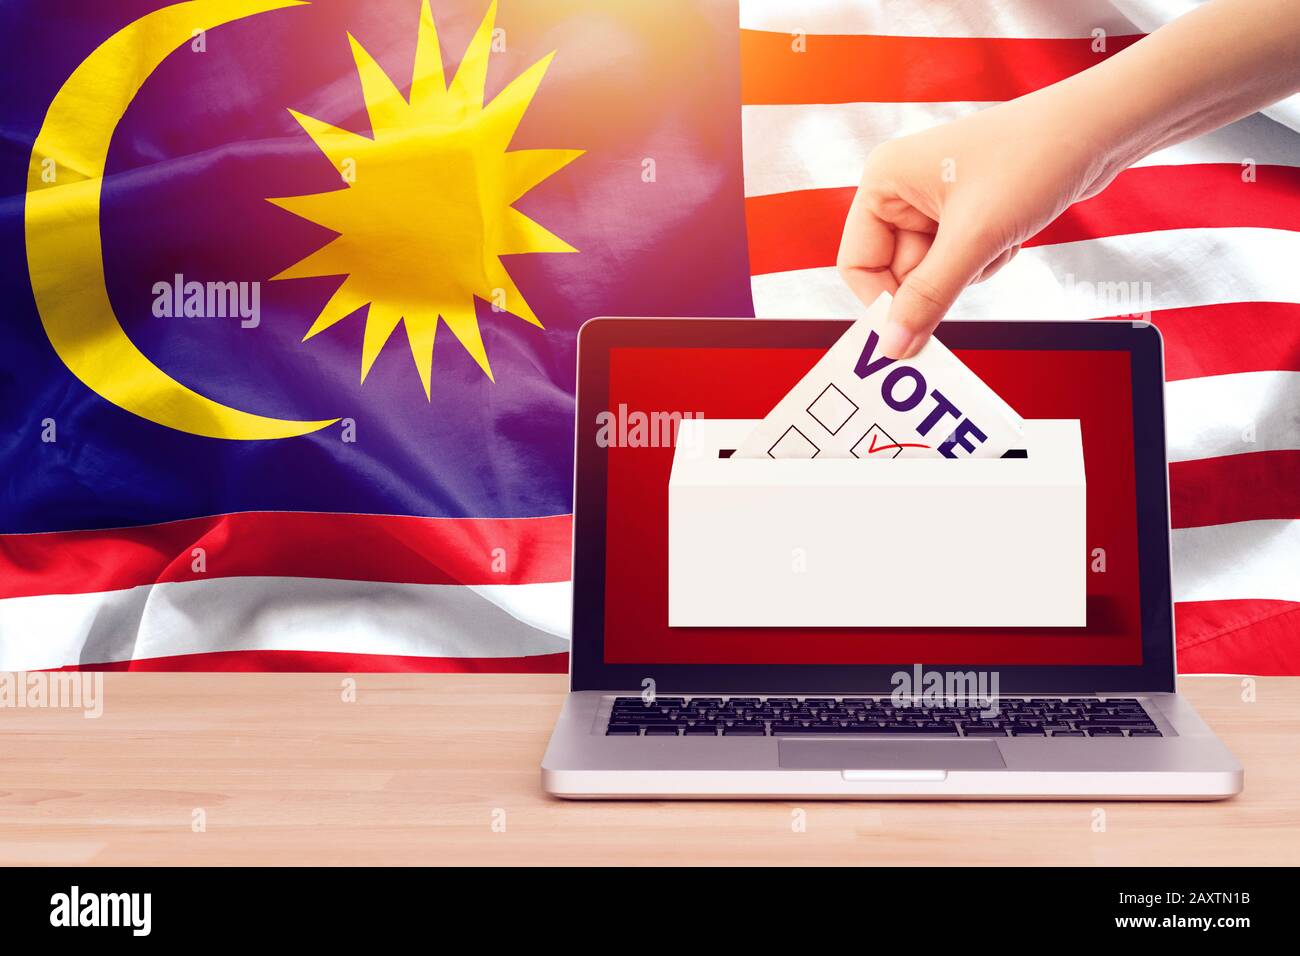 Voto en línea , votación, encuesta de salida para el concepto de elecciones generales de Malasia. Mano cercana de una persona que ha hecho una papeleta en las elecciones durante la votación sobre el lienzo M. Foto de stock